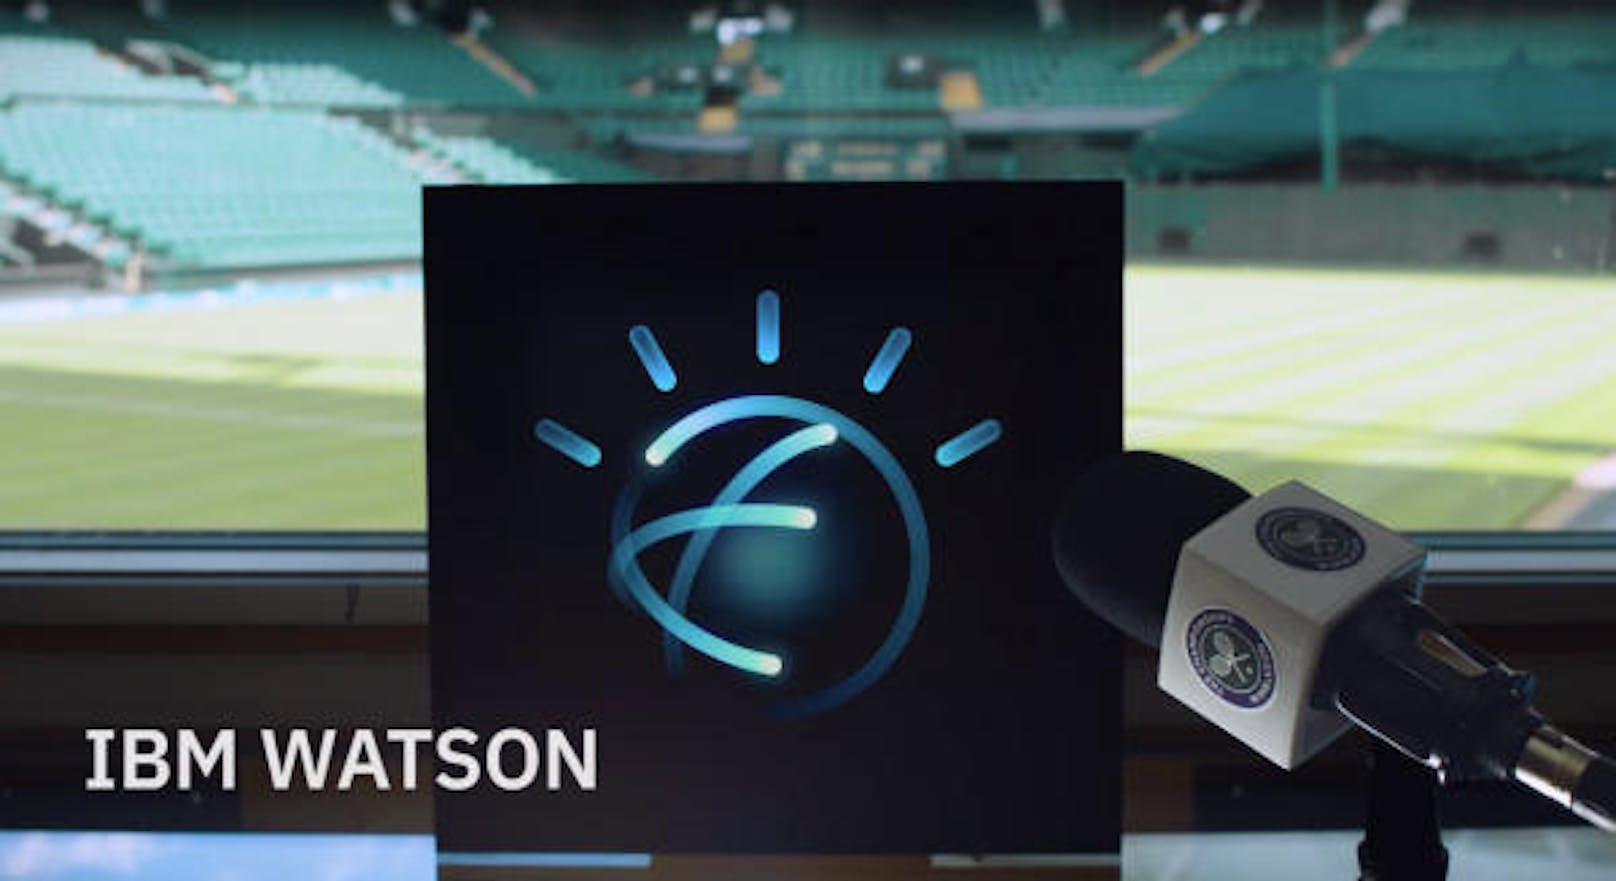 Dafür arbeitet der All England Lawn Tennis Club, der das Turnier in London veranstaltet, mit IBM zusammen. Das IT-Unternehmen nutzt die Supercomputer-Plattform Watson, um darüber die Bilder von den Spielen mit künstlicher Intelligenz zu analysieren.